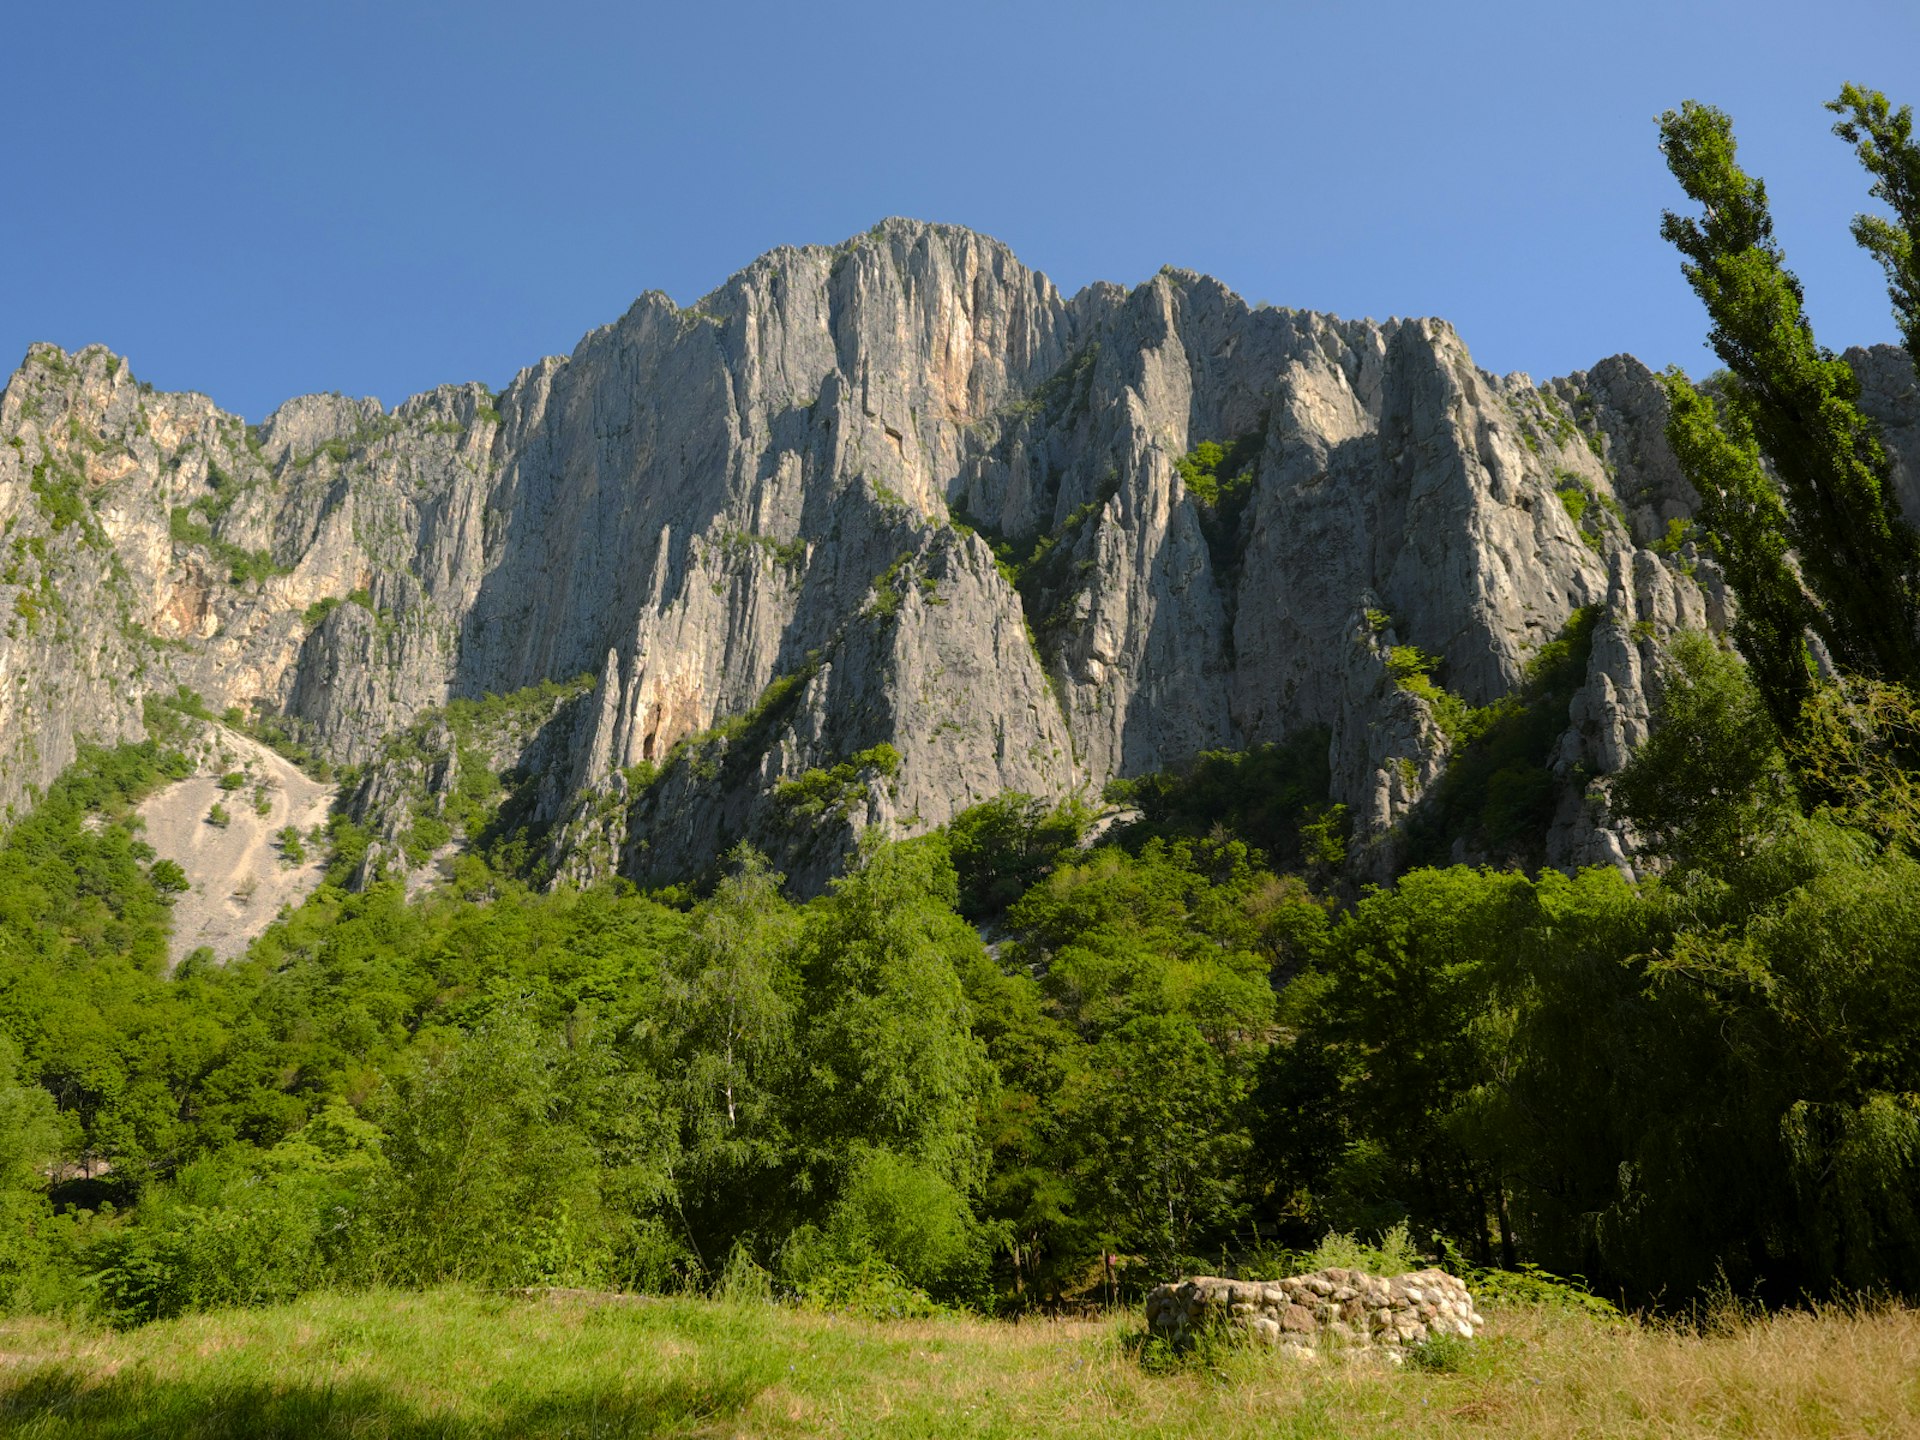 The towering Vrachanska Mountains, part of the Vrachanski Balkan Nature Park © ollirg / Shutterstock